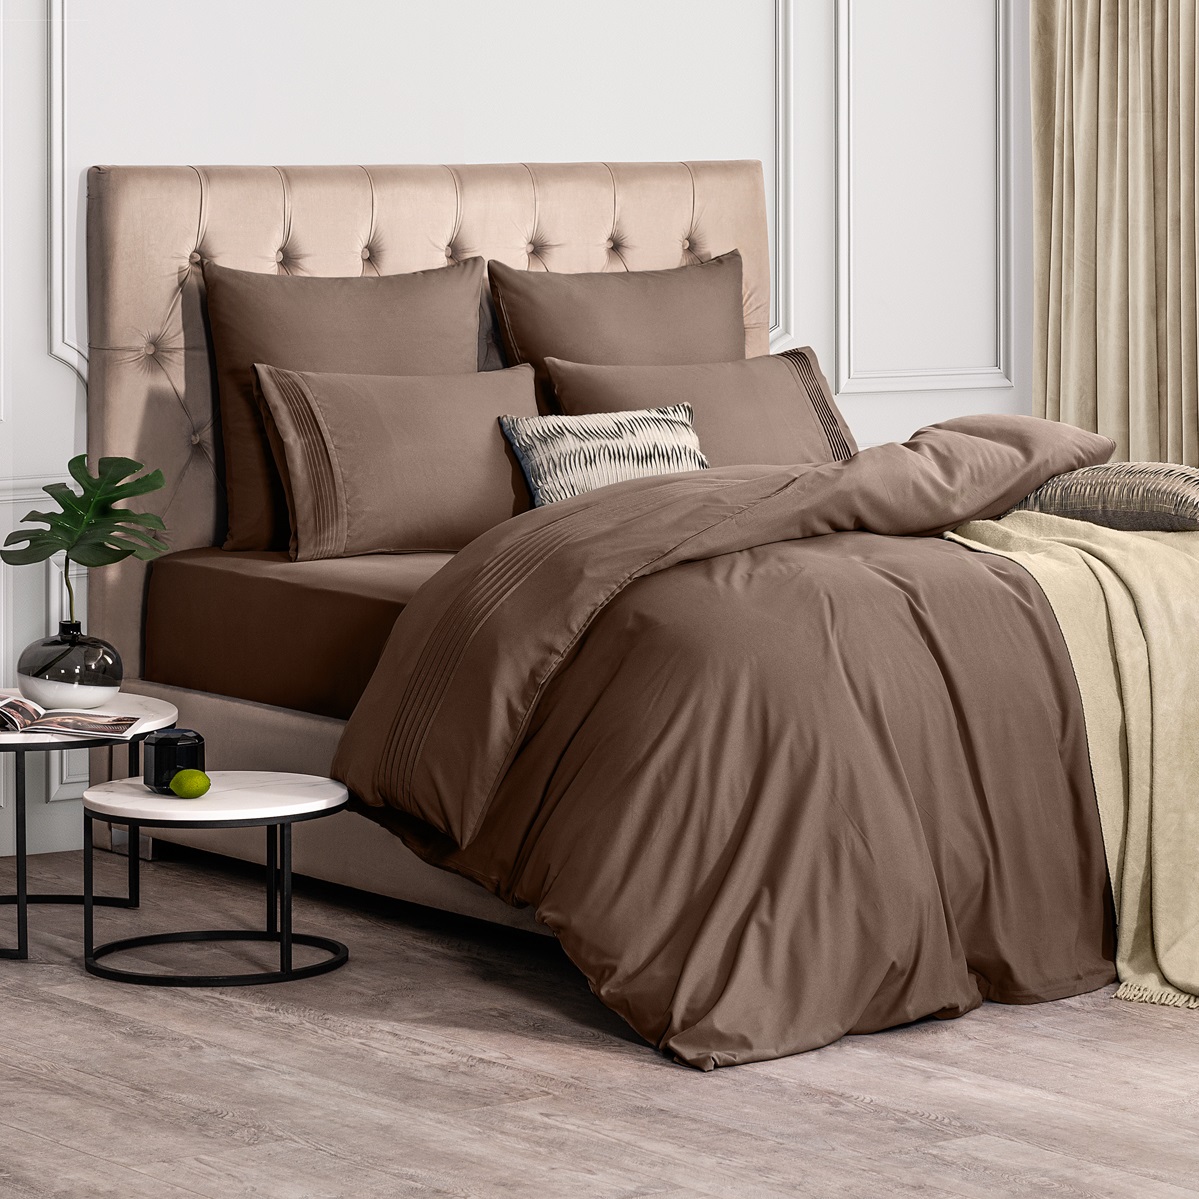 Комплект постельного белья Sleepix Миоко коричневый Полуторный, размер Полуторный - фото 2